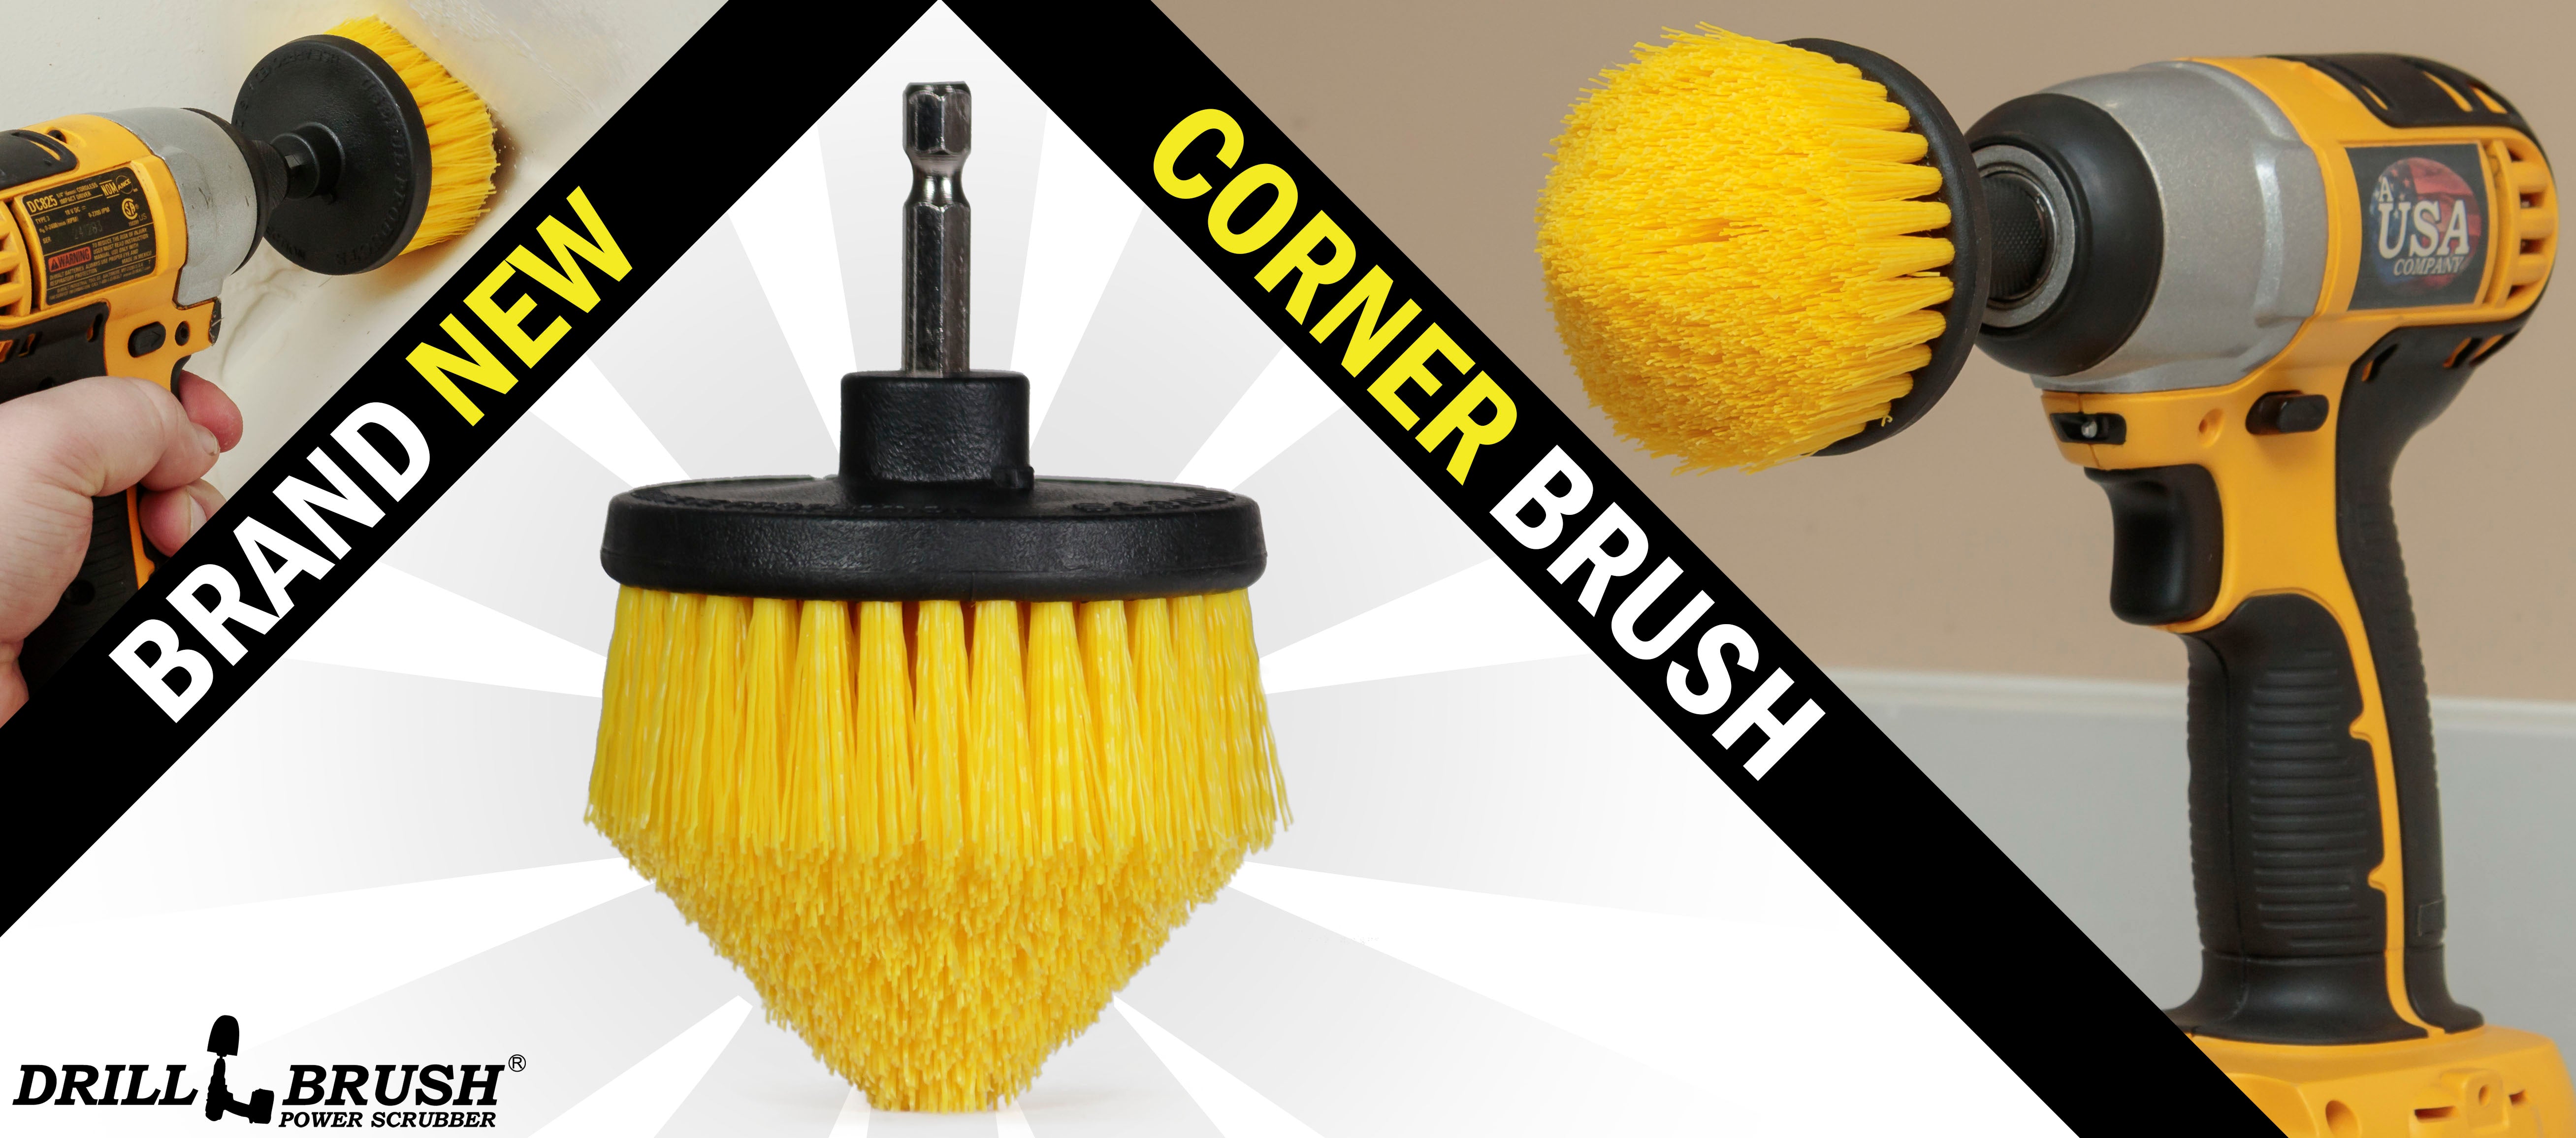 New from Drillbrush - The Cone-shaped Corner Brush